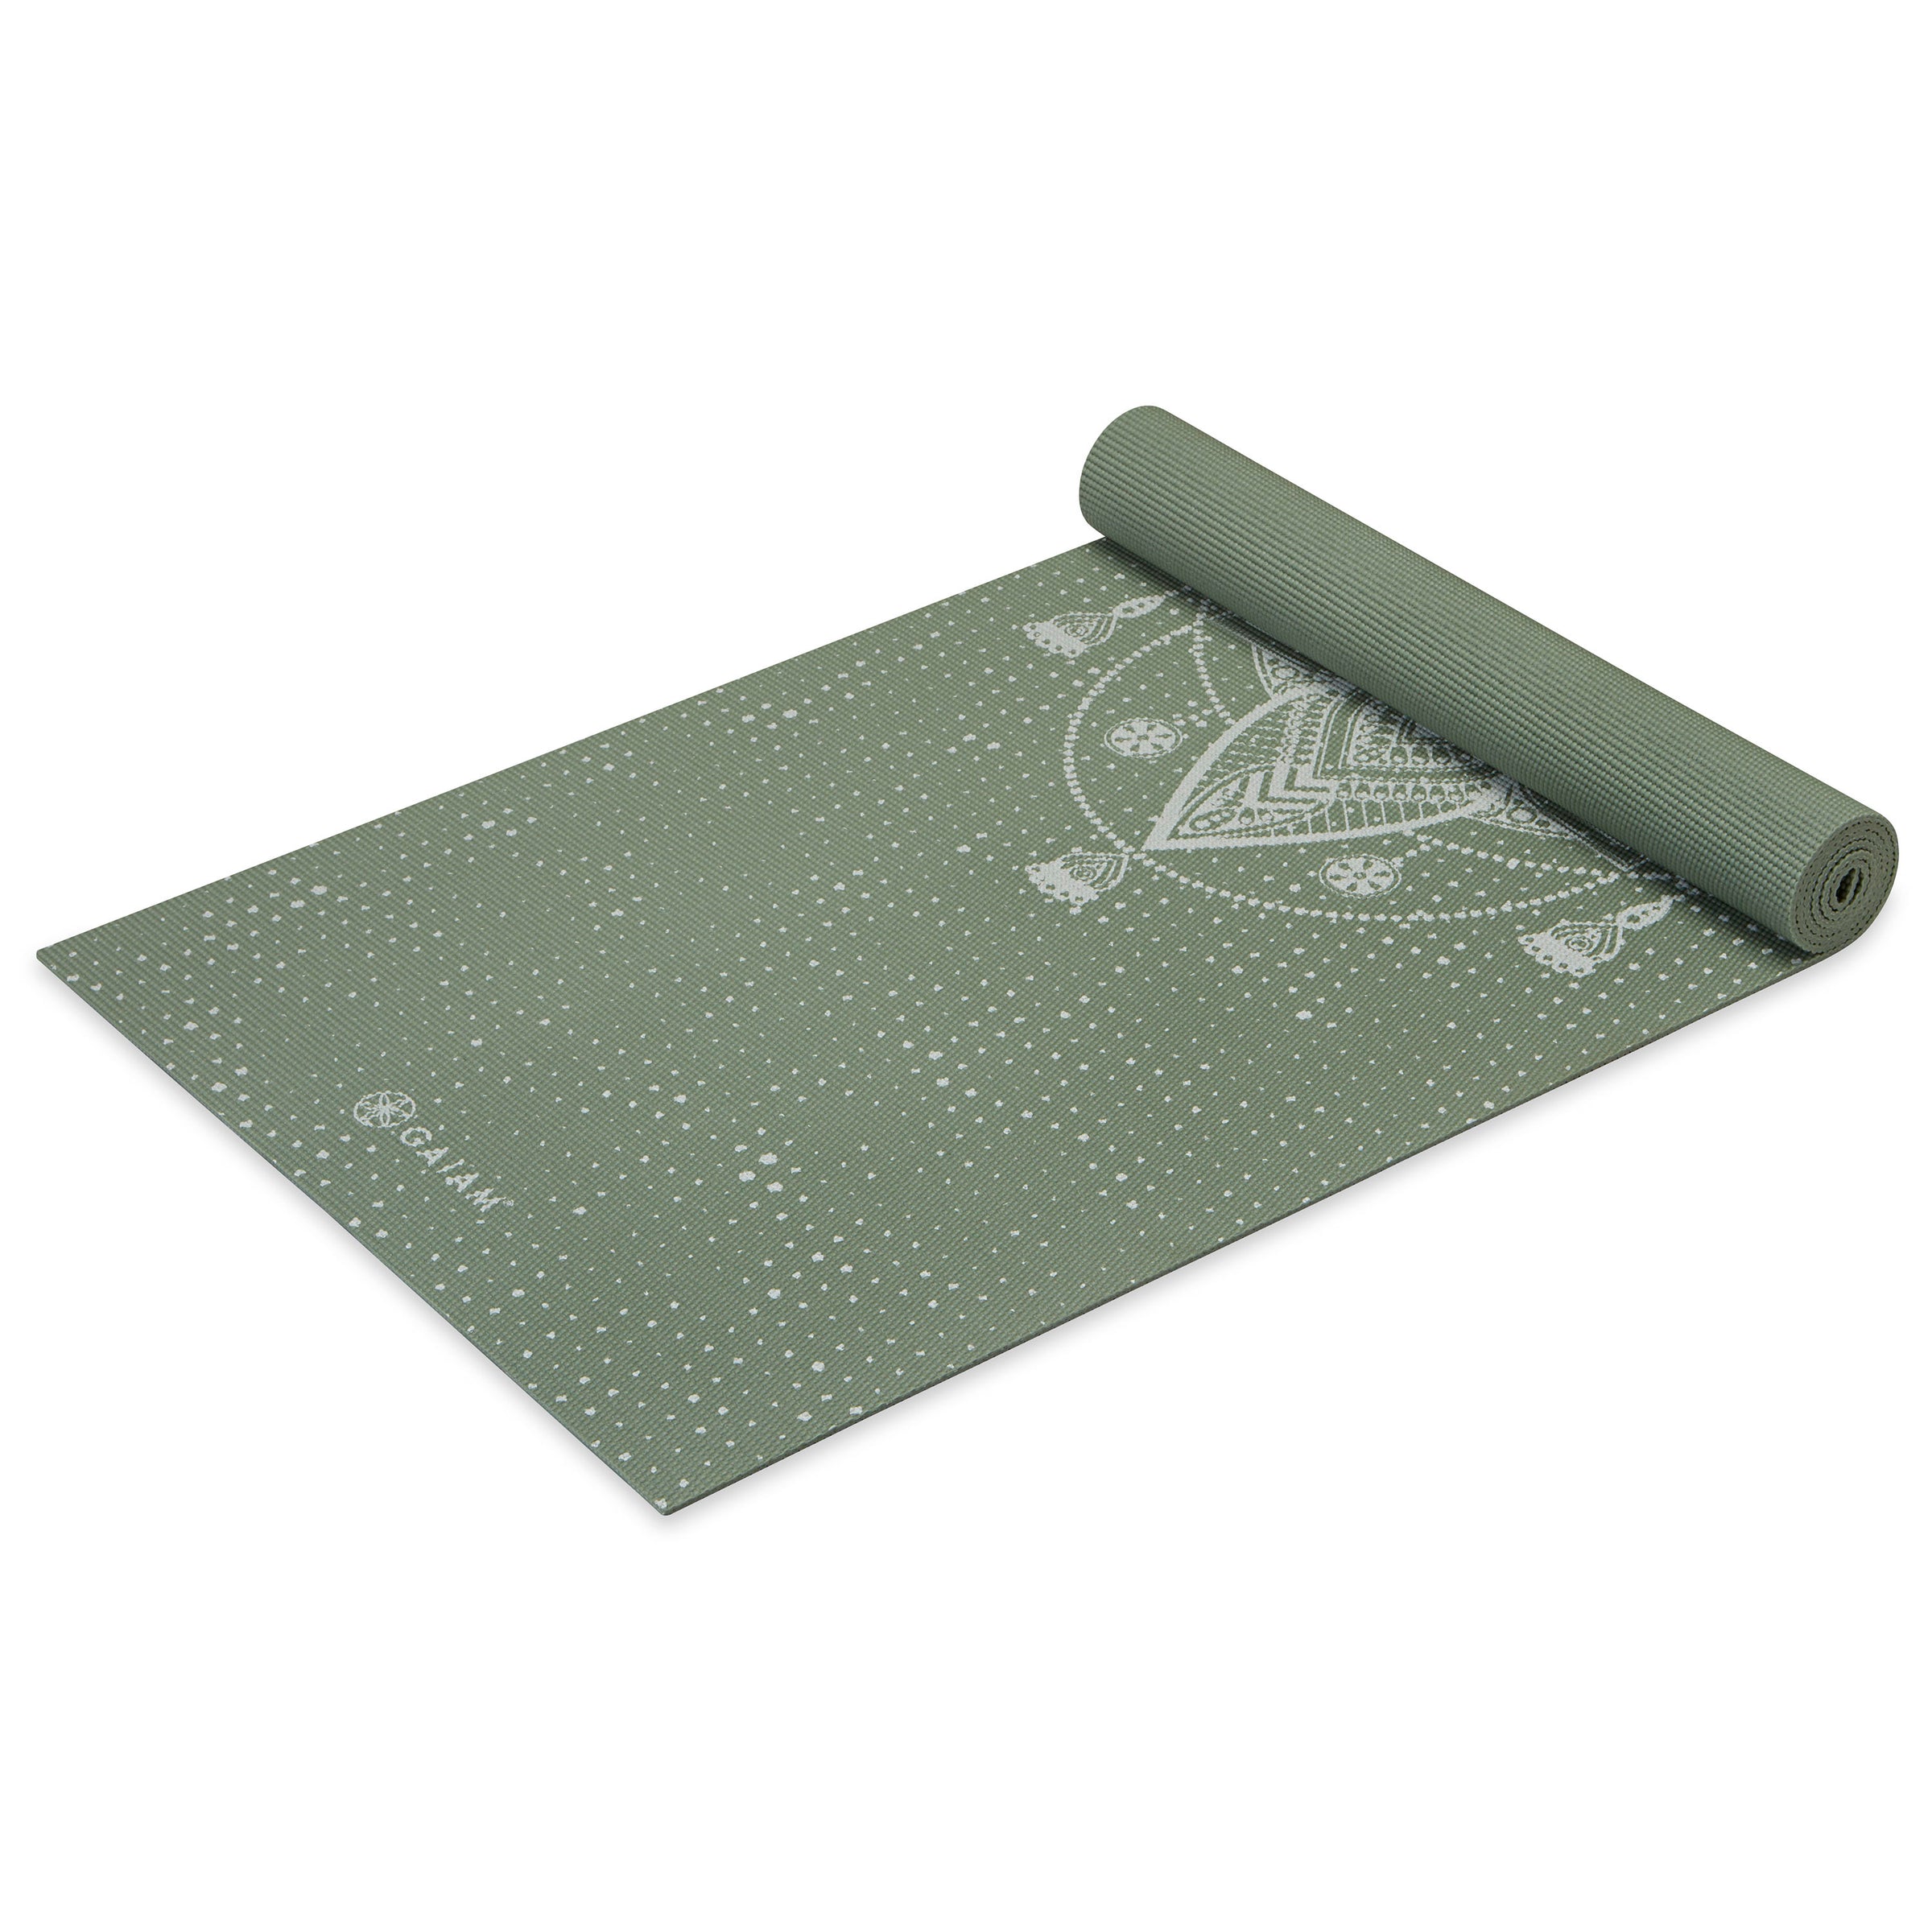 Gaiam Printed Yoga Mat - 5 mm - Save 35%